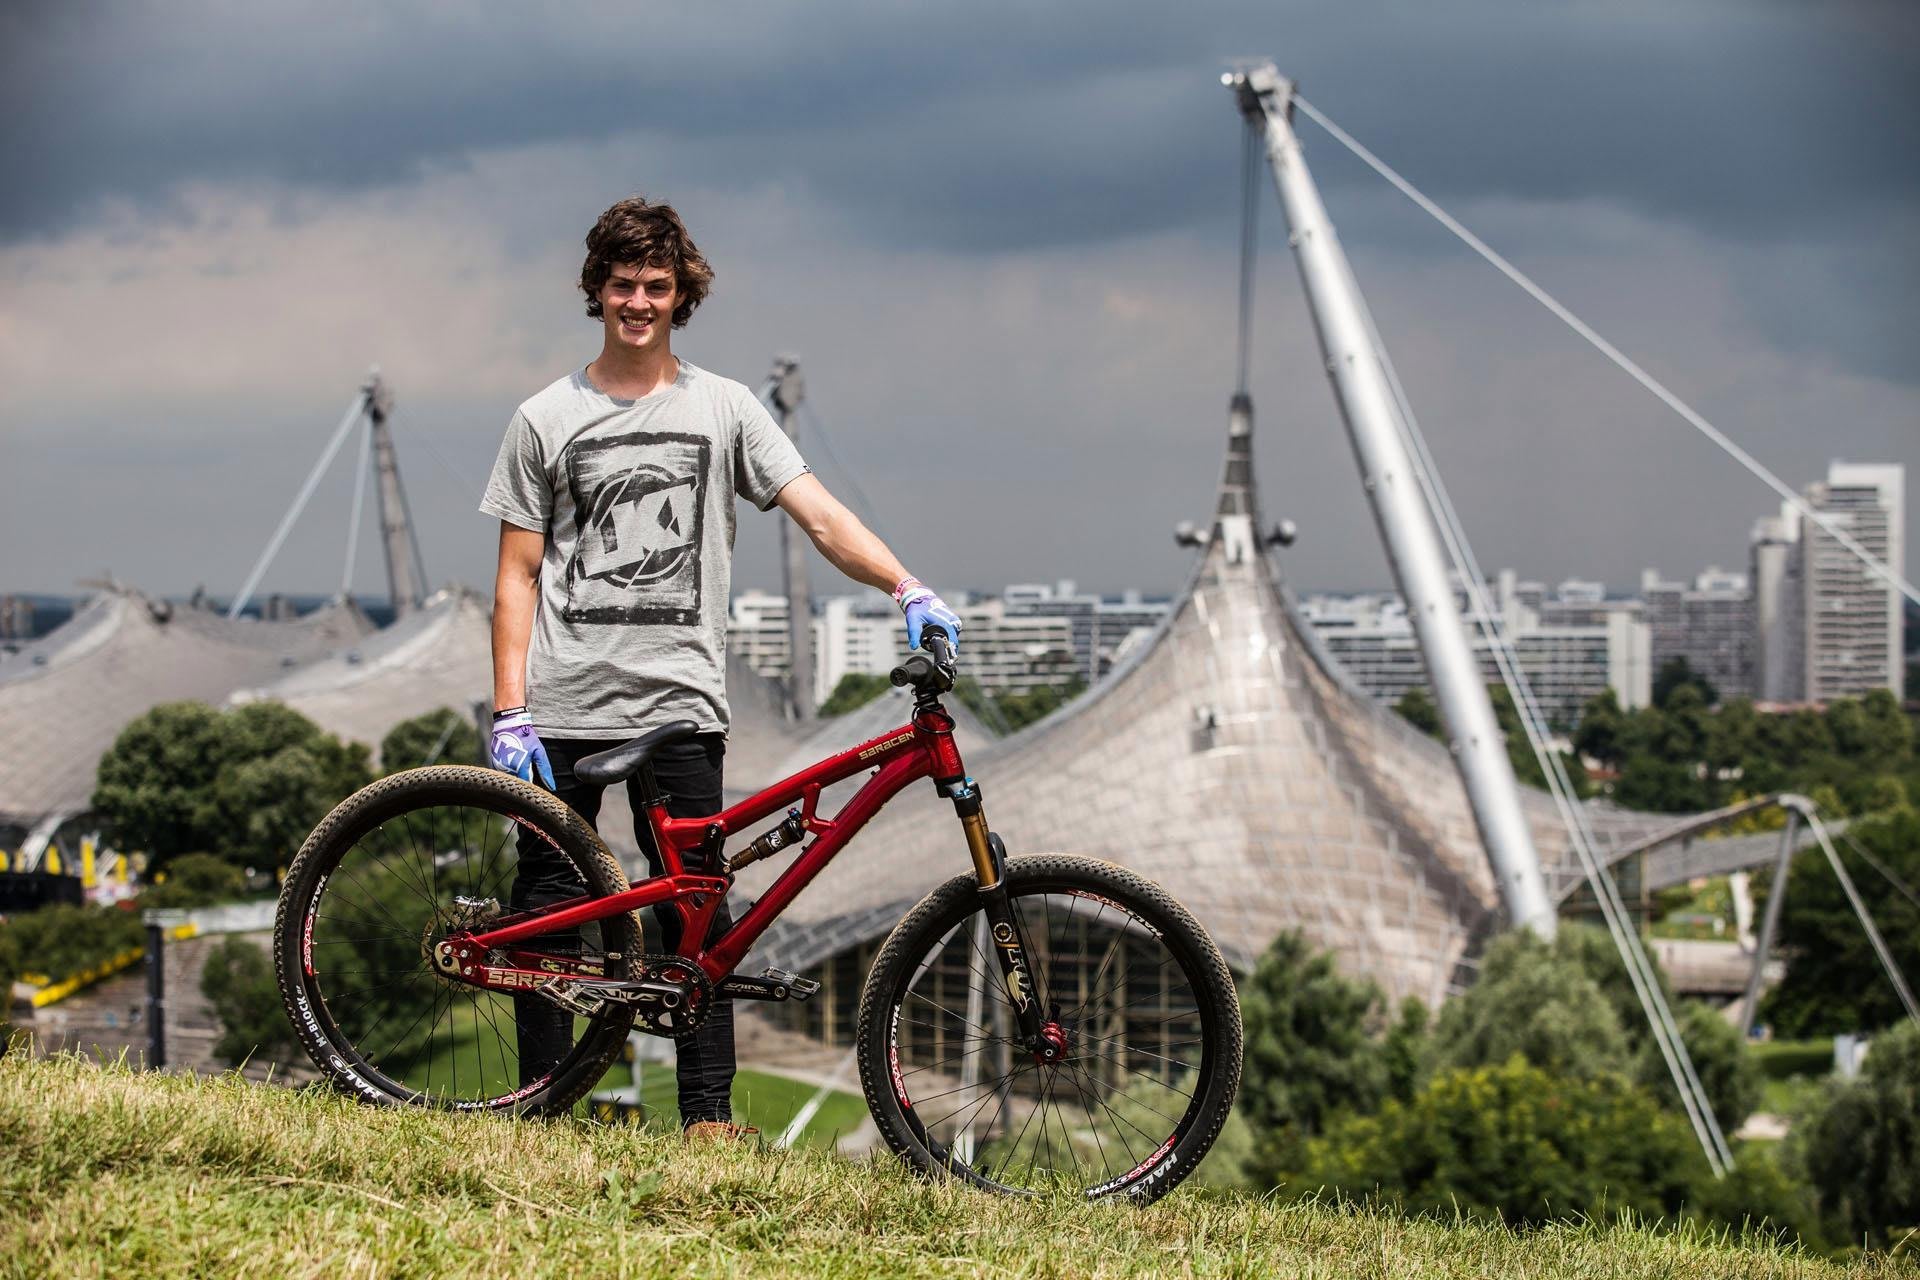 Bike-Check: Matt Jones